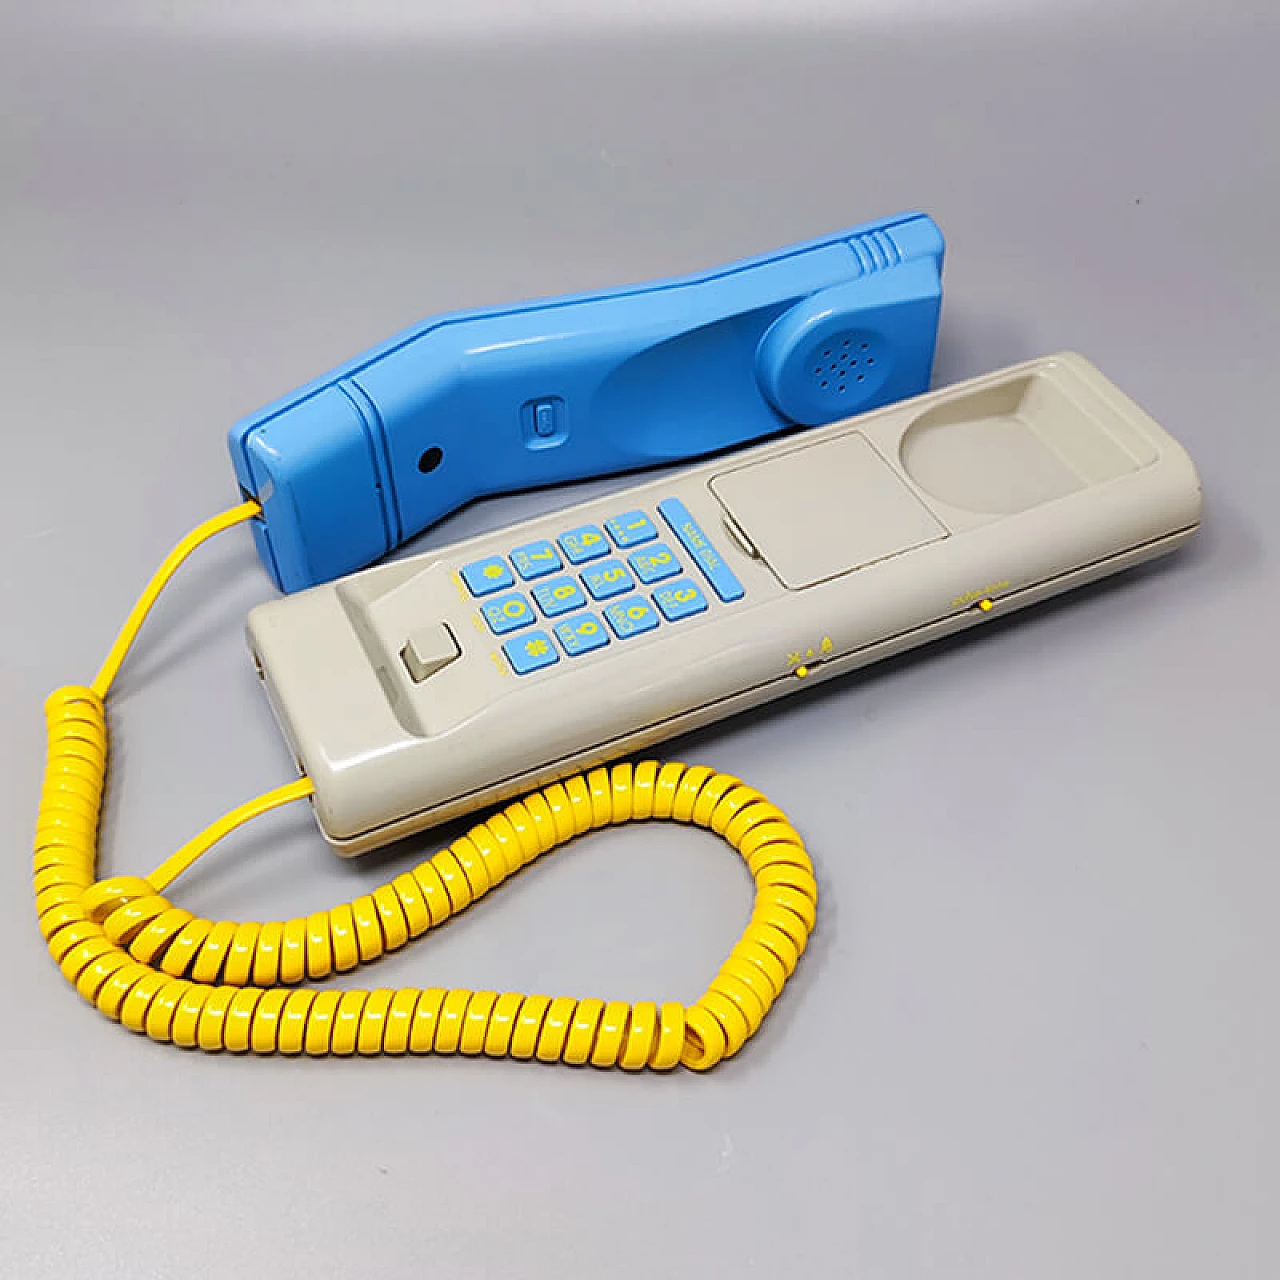 Telefono fisso Swatch Twin Phone Deluxe, anni '80 7